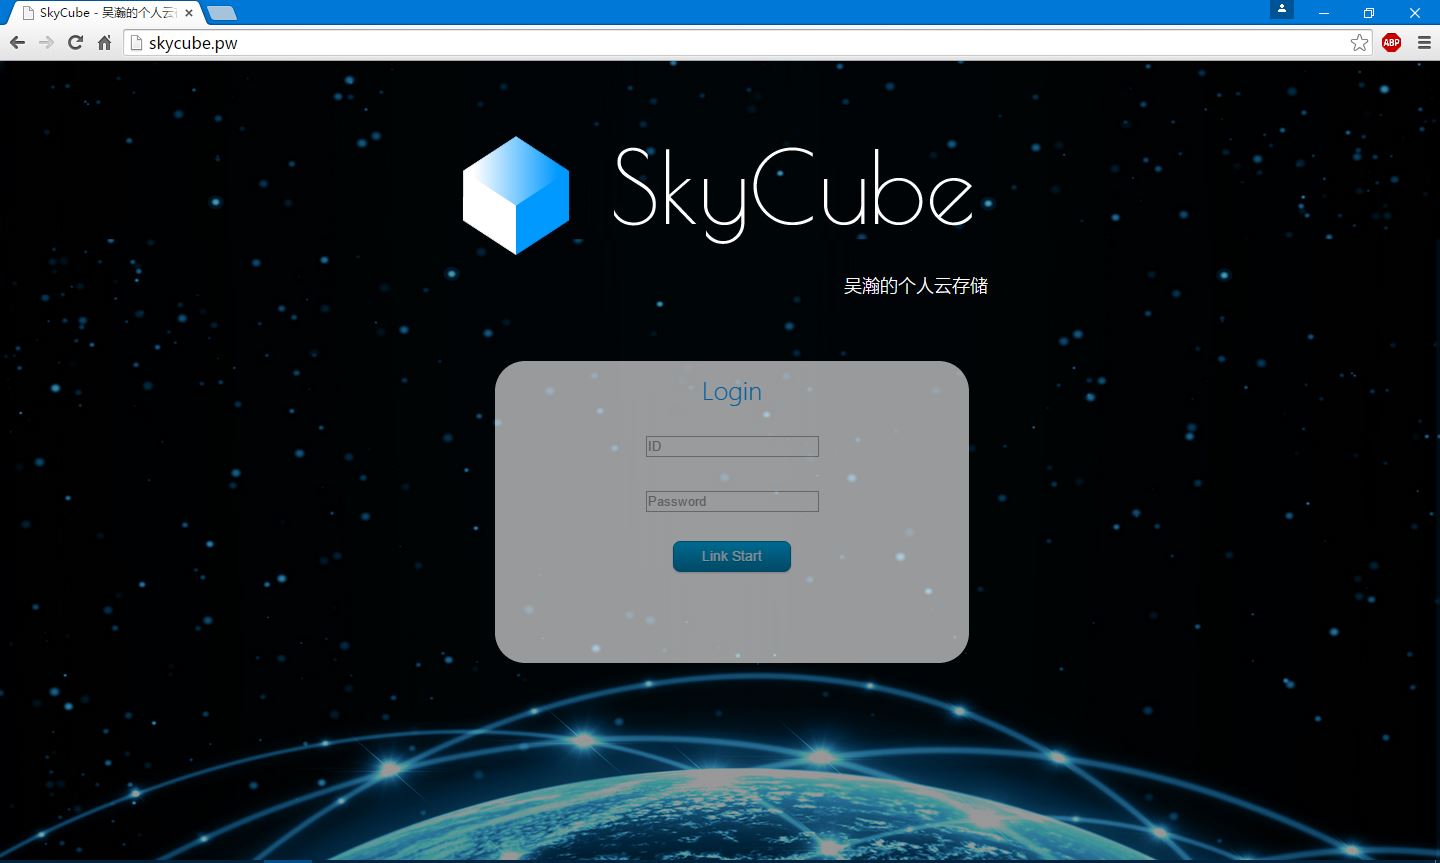 Skycube